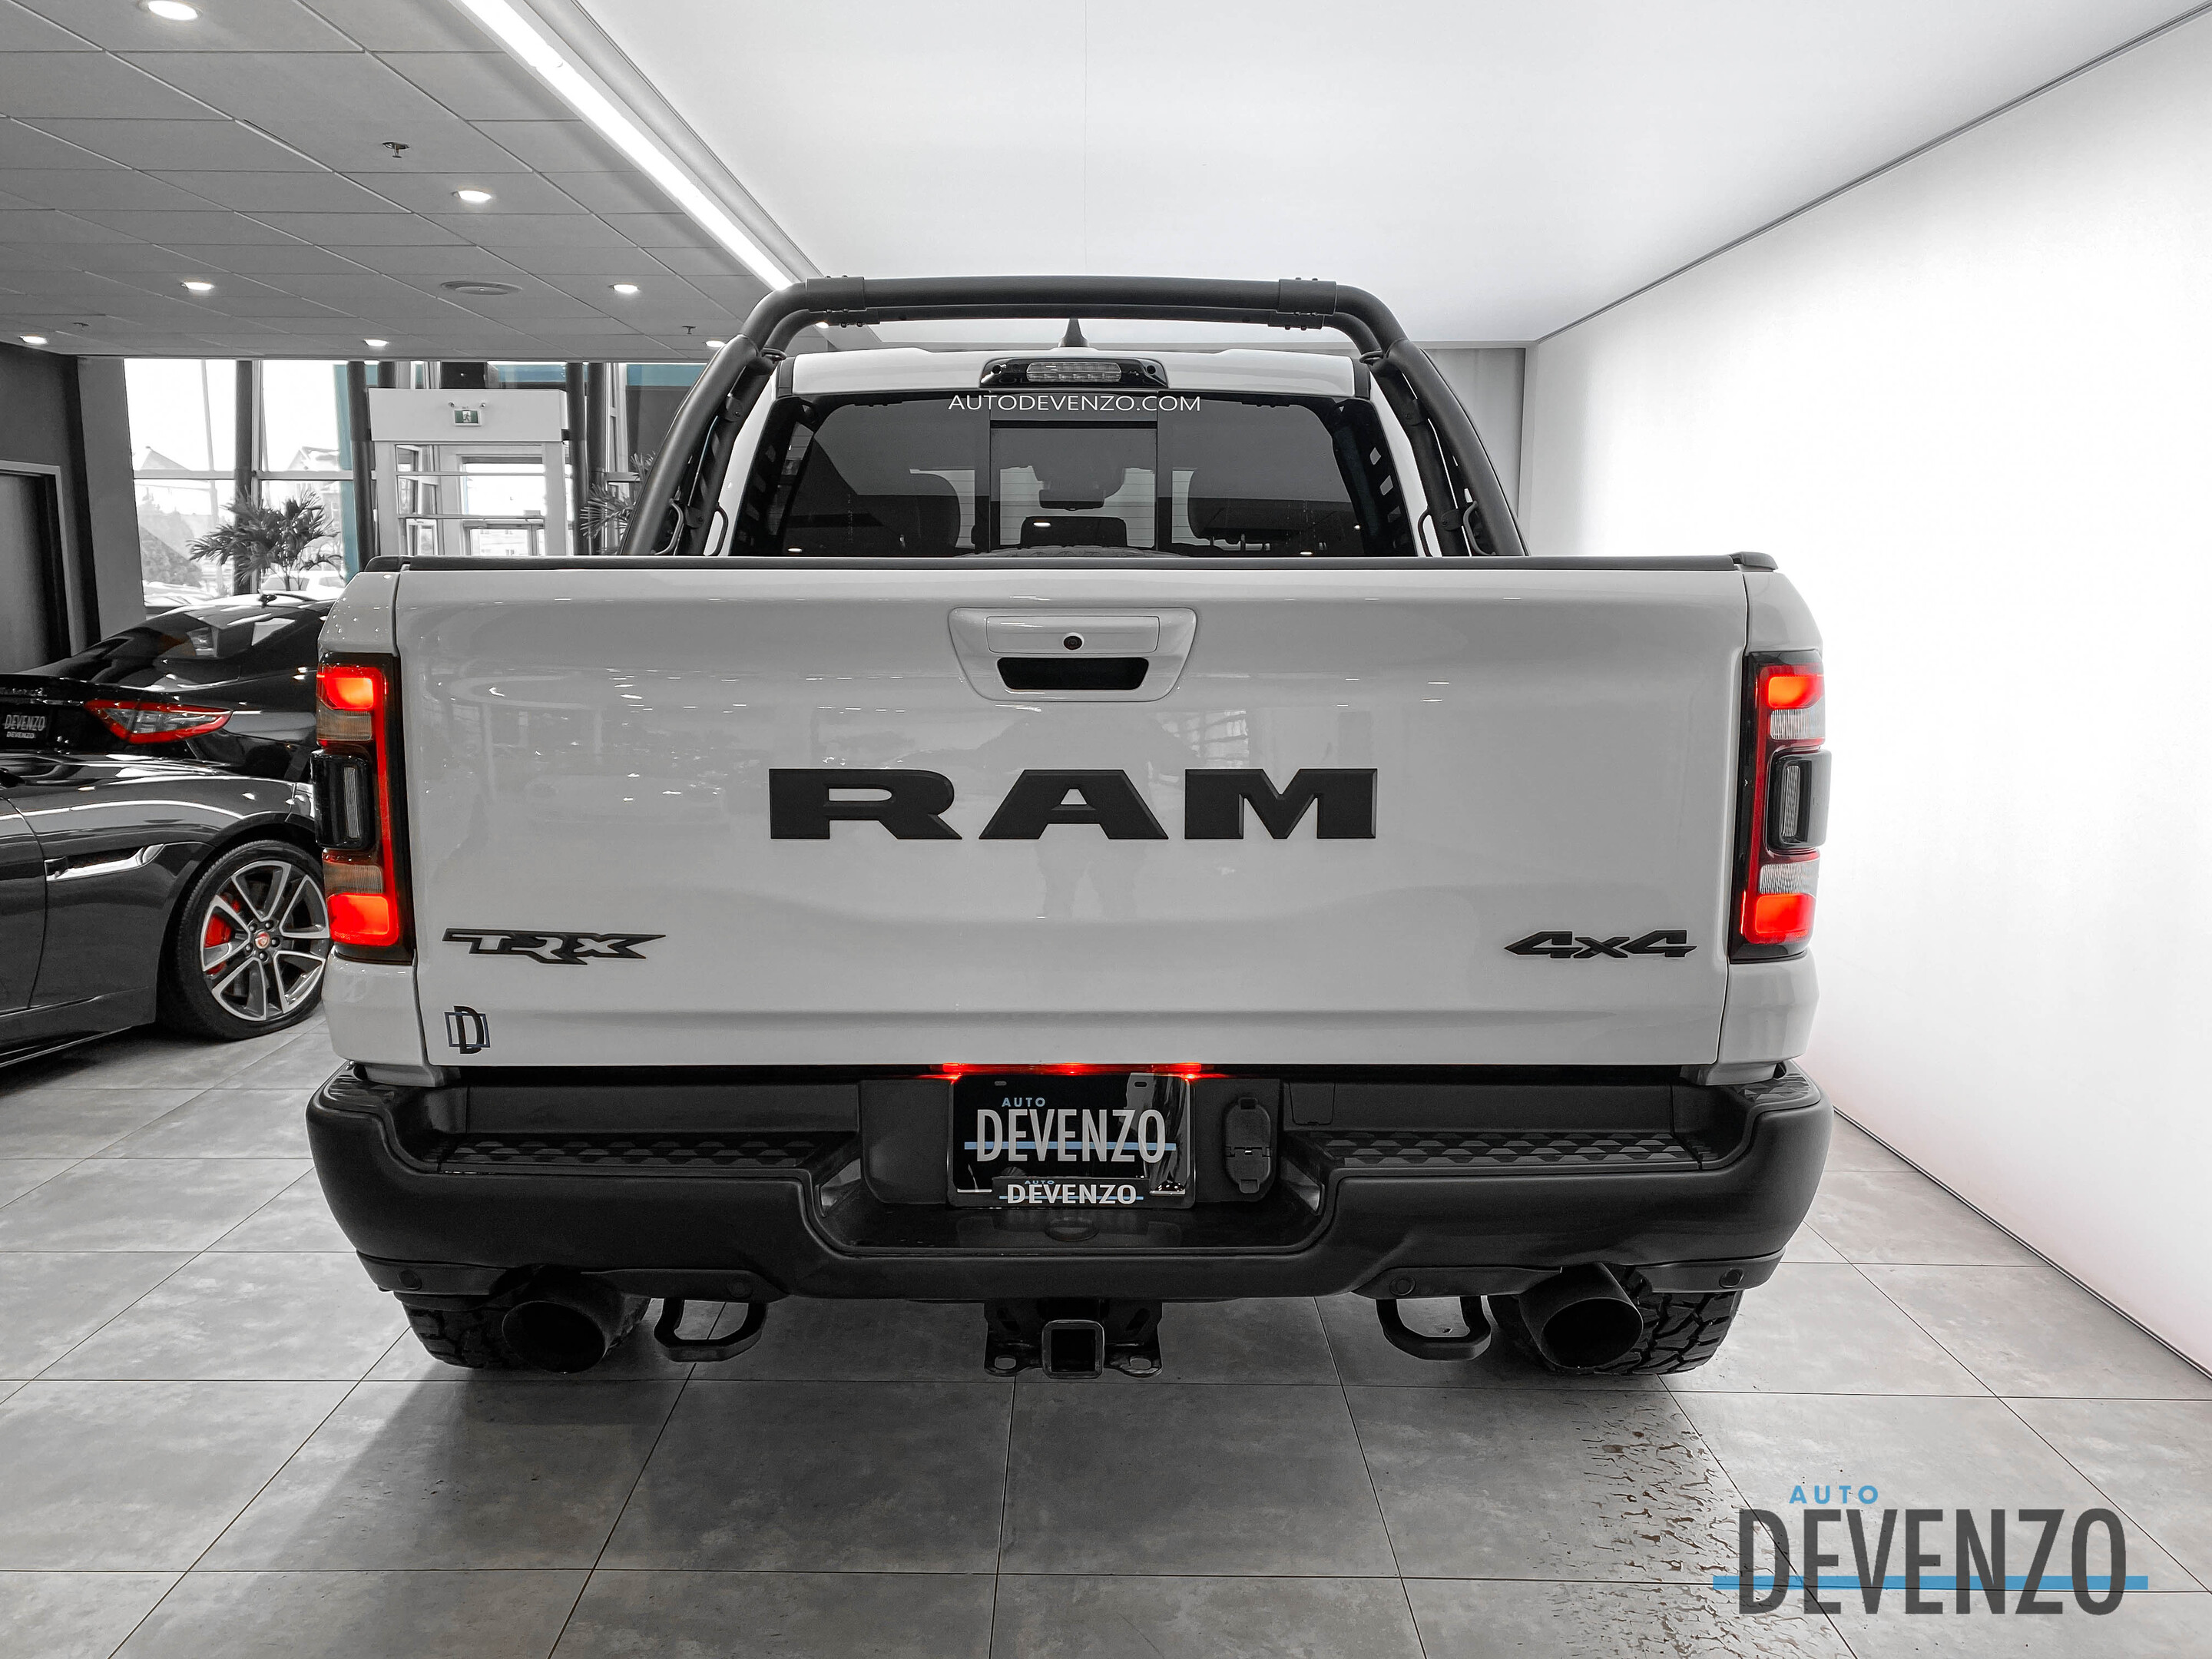 2021 Ram 1500 TRX 4X4 702HP LEVEL 2 / CARBON FIBER / RAM BAR complet